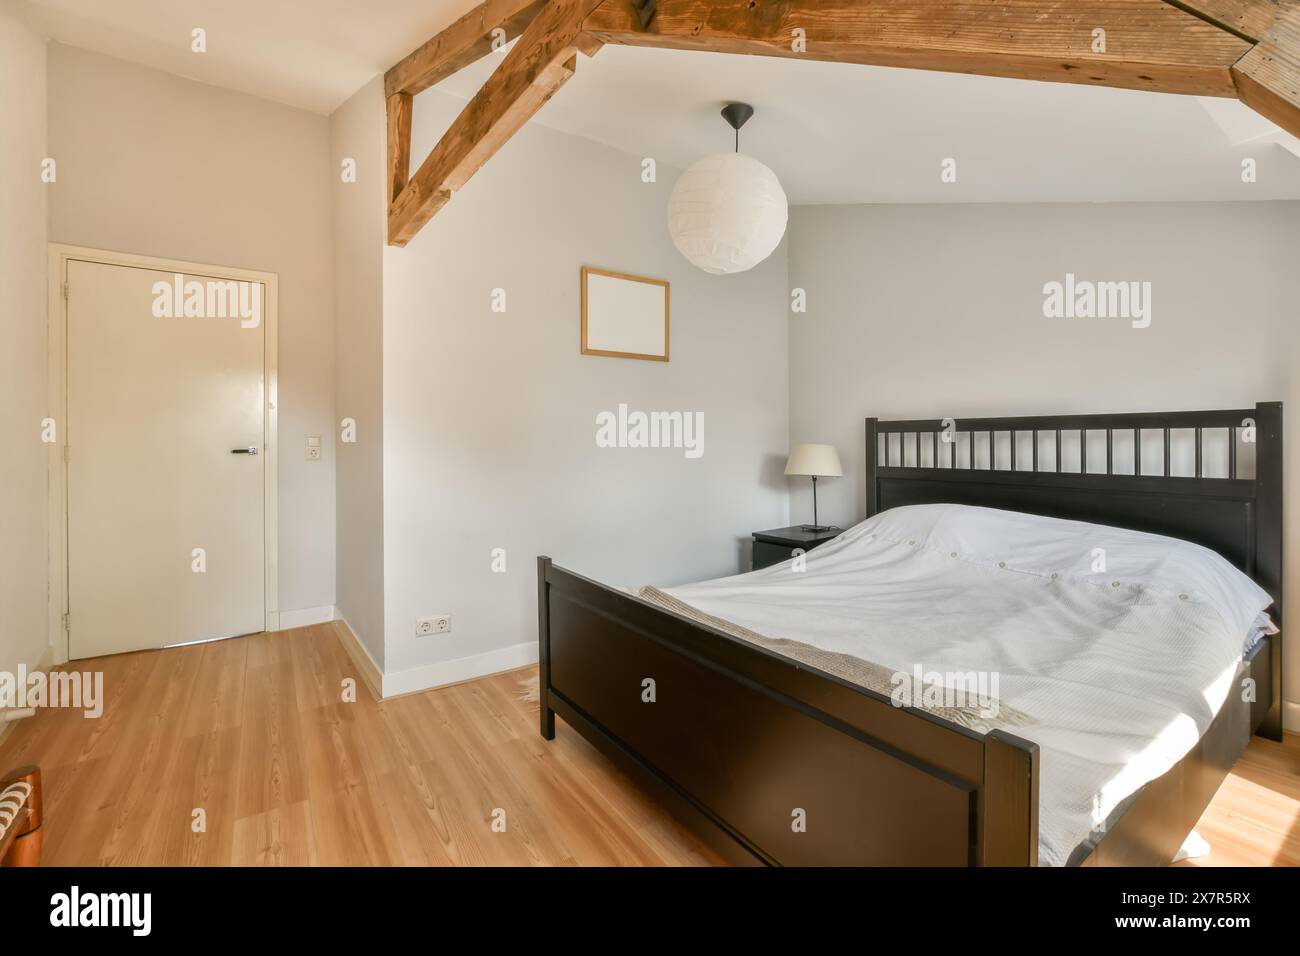 Ein gut beleuchtetes, minimalistisches Schlafzimmer mit Holzrahmen, freiliegenden Holzbalken und einfacher moderner Einrichtung. Stockfoto